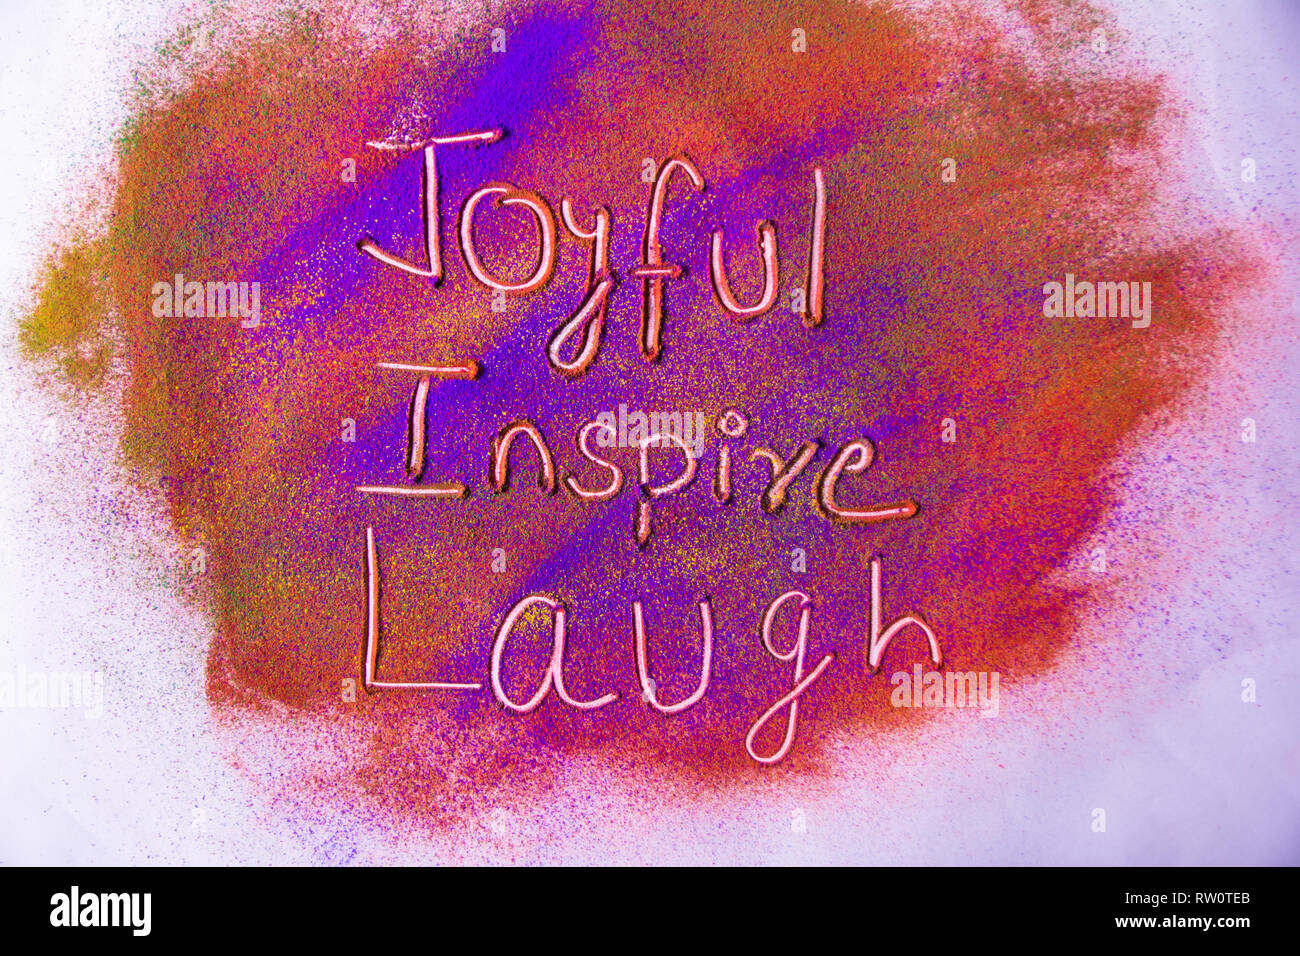 Freude, Lachen und Inspire Wort auf bunten Pulver Stockfoto